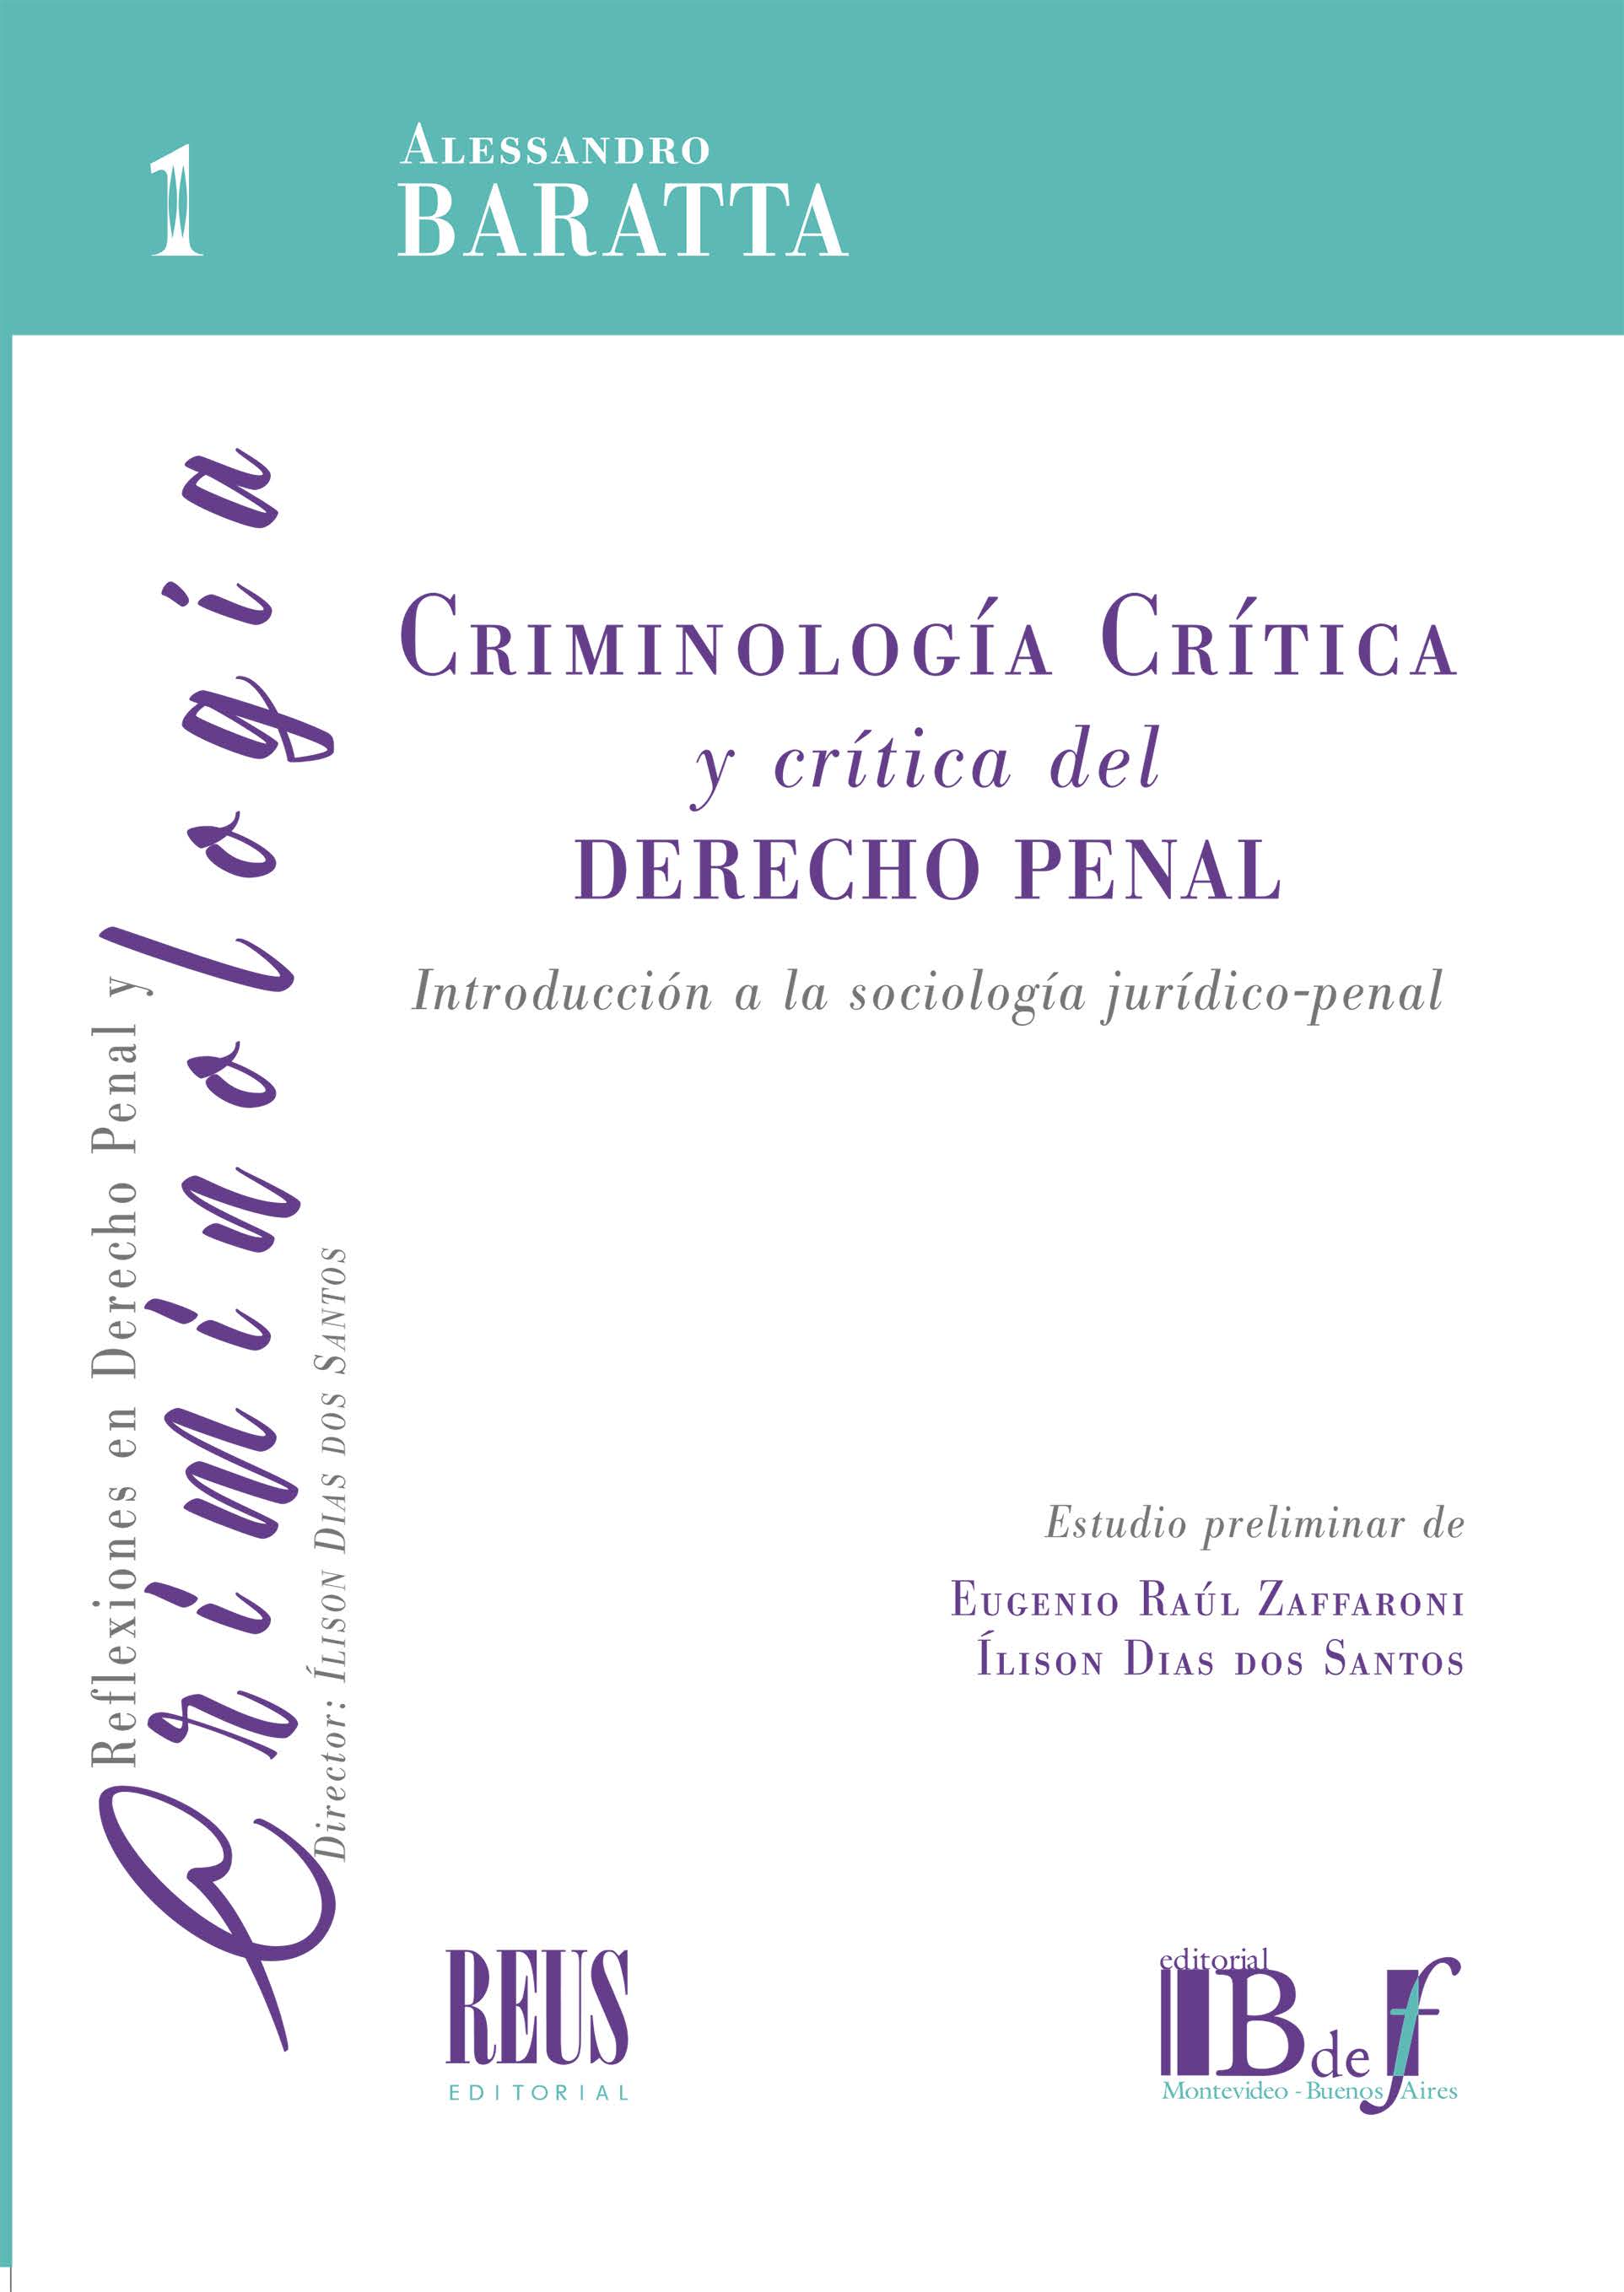 Imagen de portada del libro Criminología crítica y crítica del derecho penal